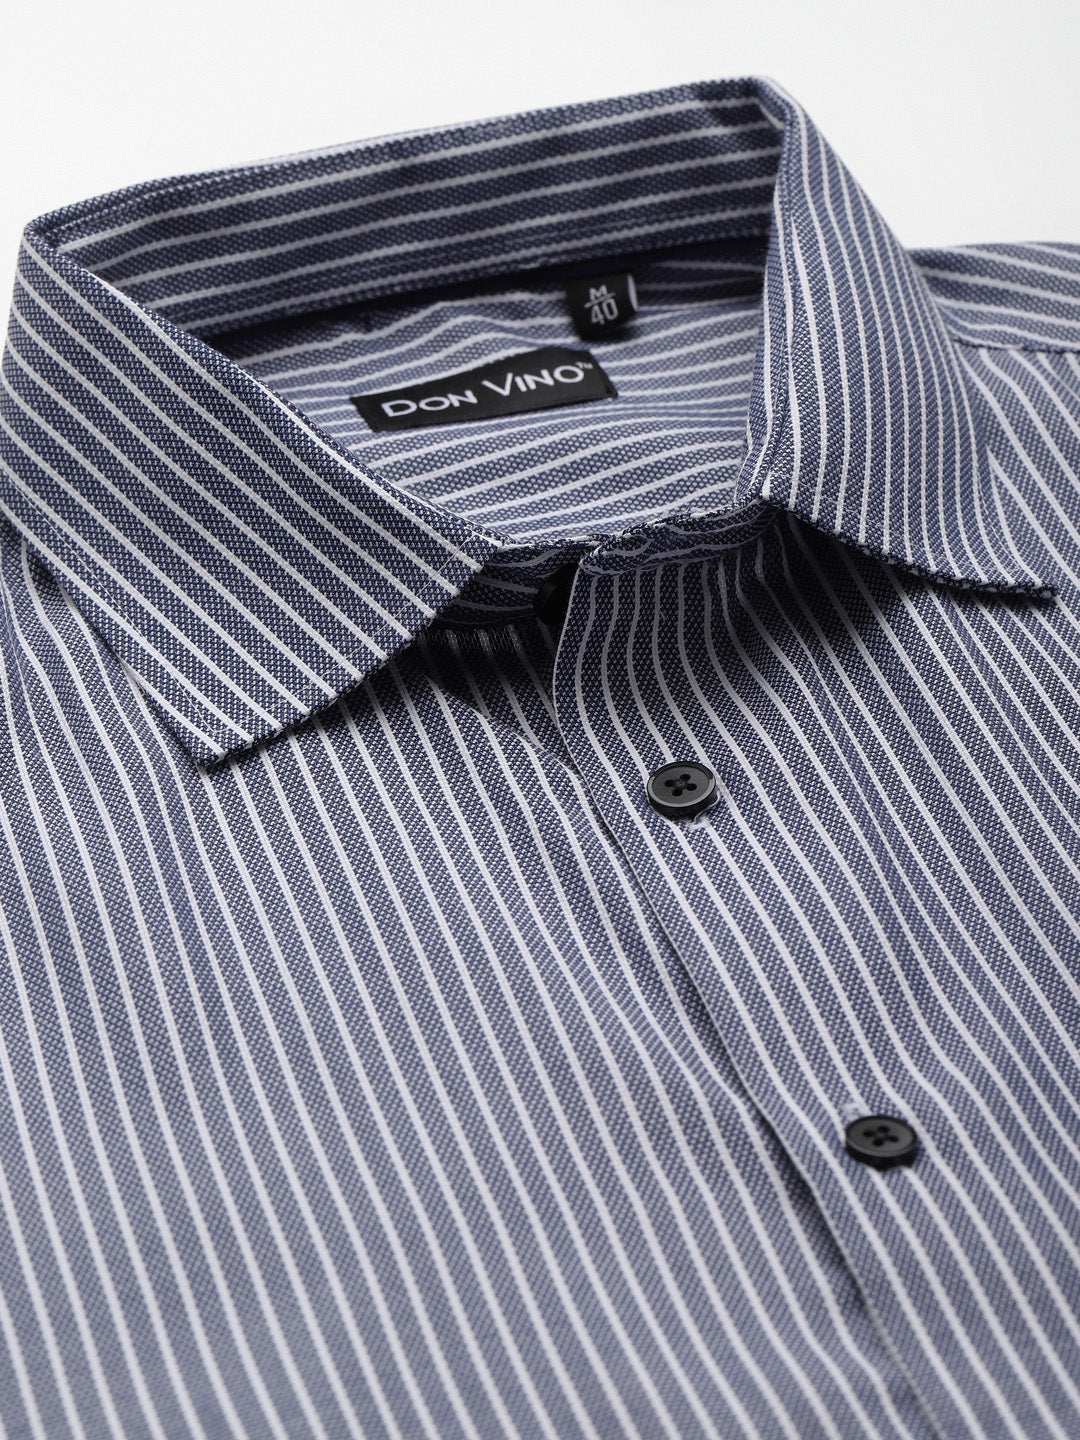 Don Vino Men's Full Sleeves Blue Stripes Formal Shirt